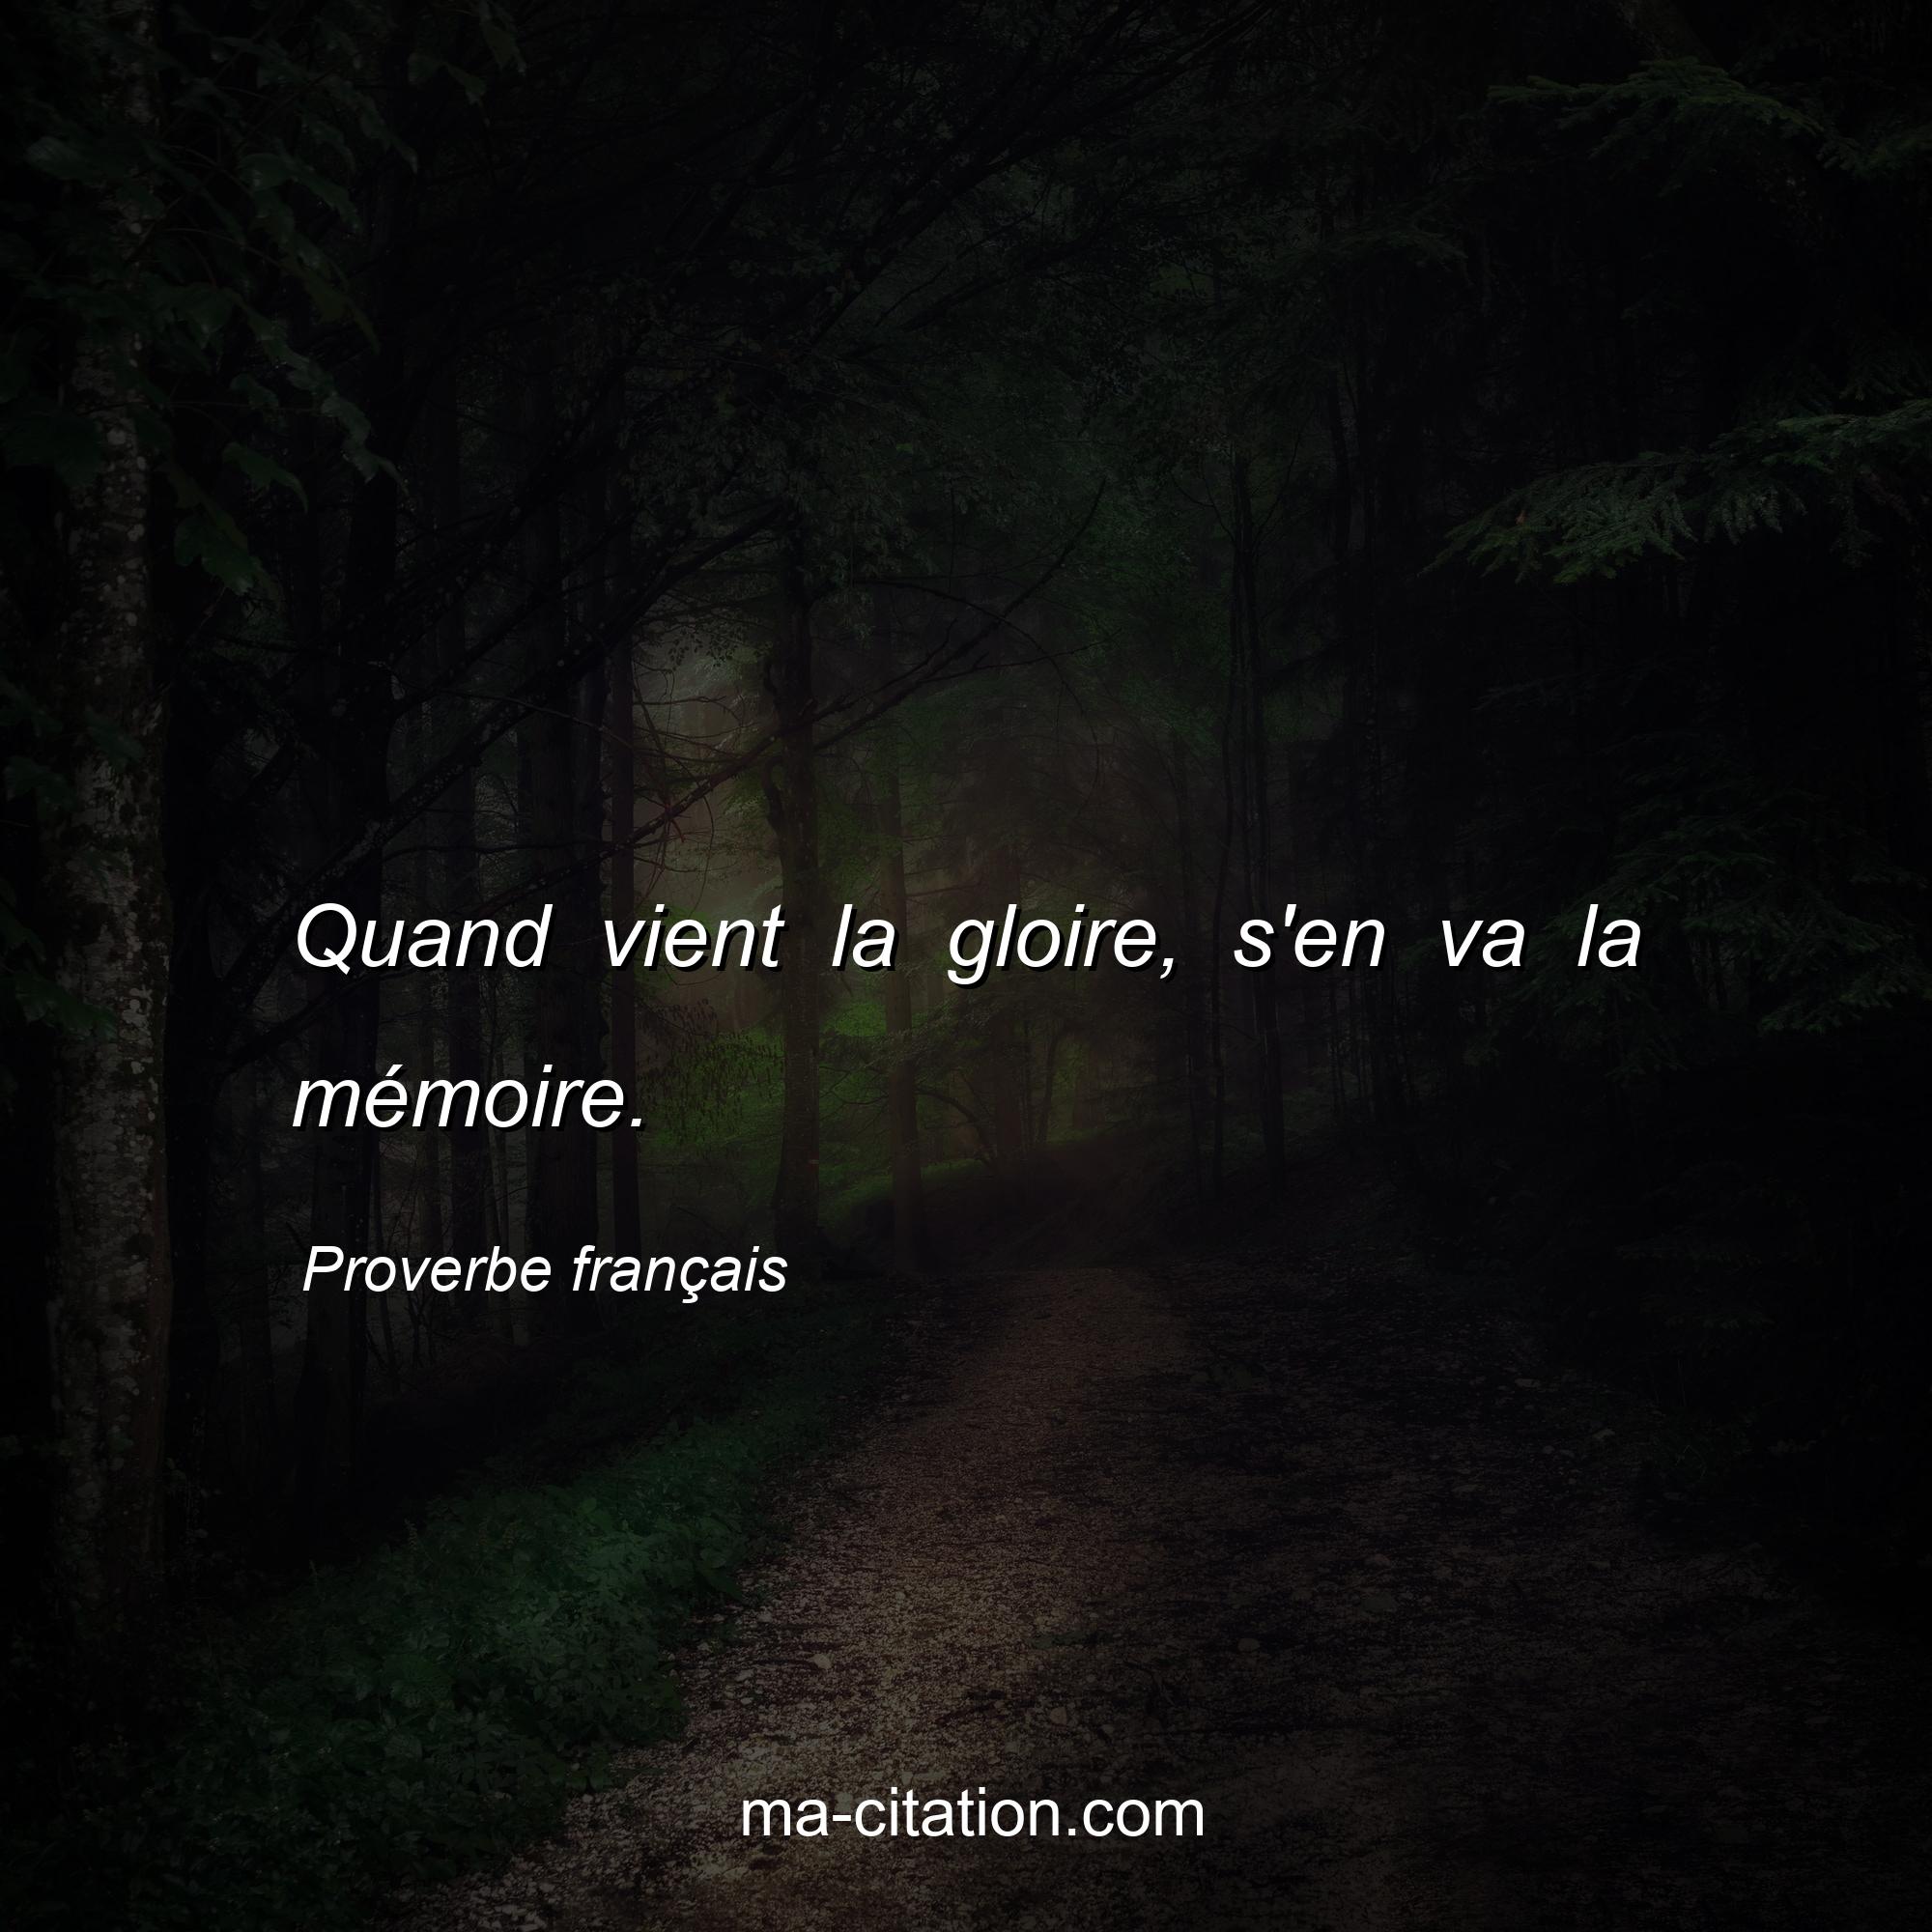 Proverbe français : Quand vient la gloire, s'en va la mémoire.